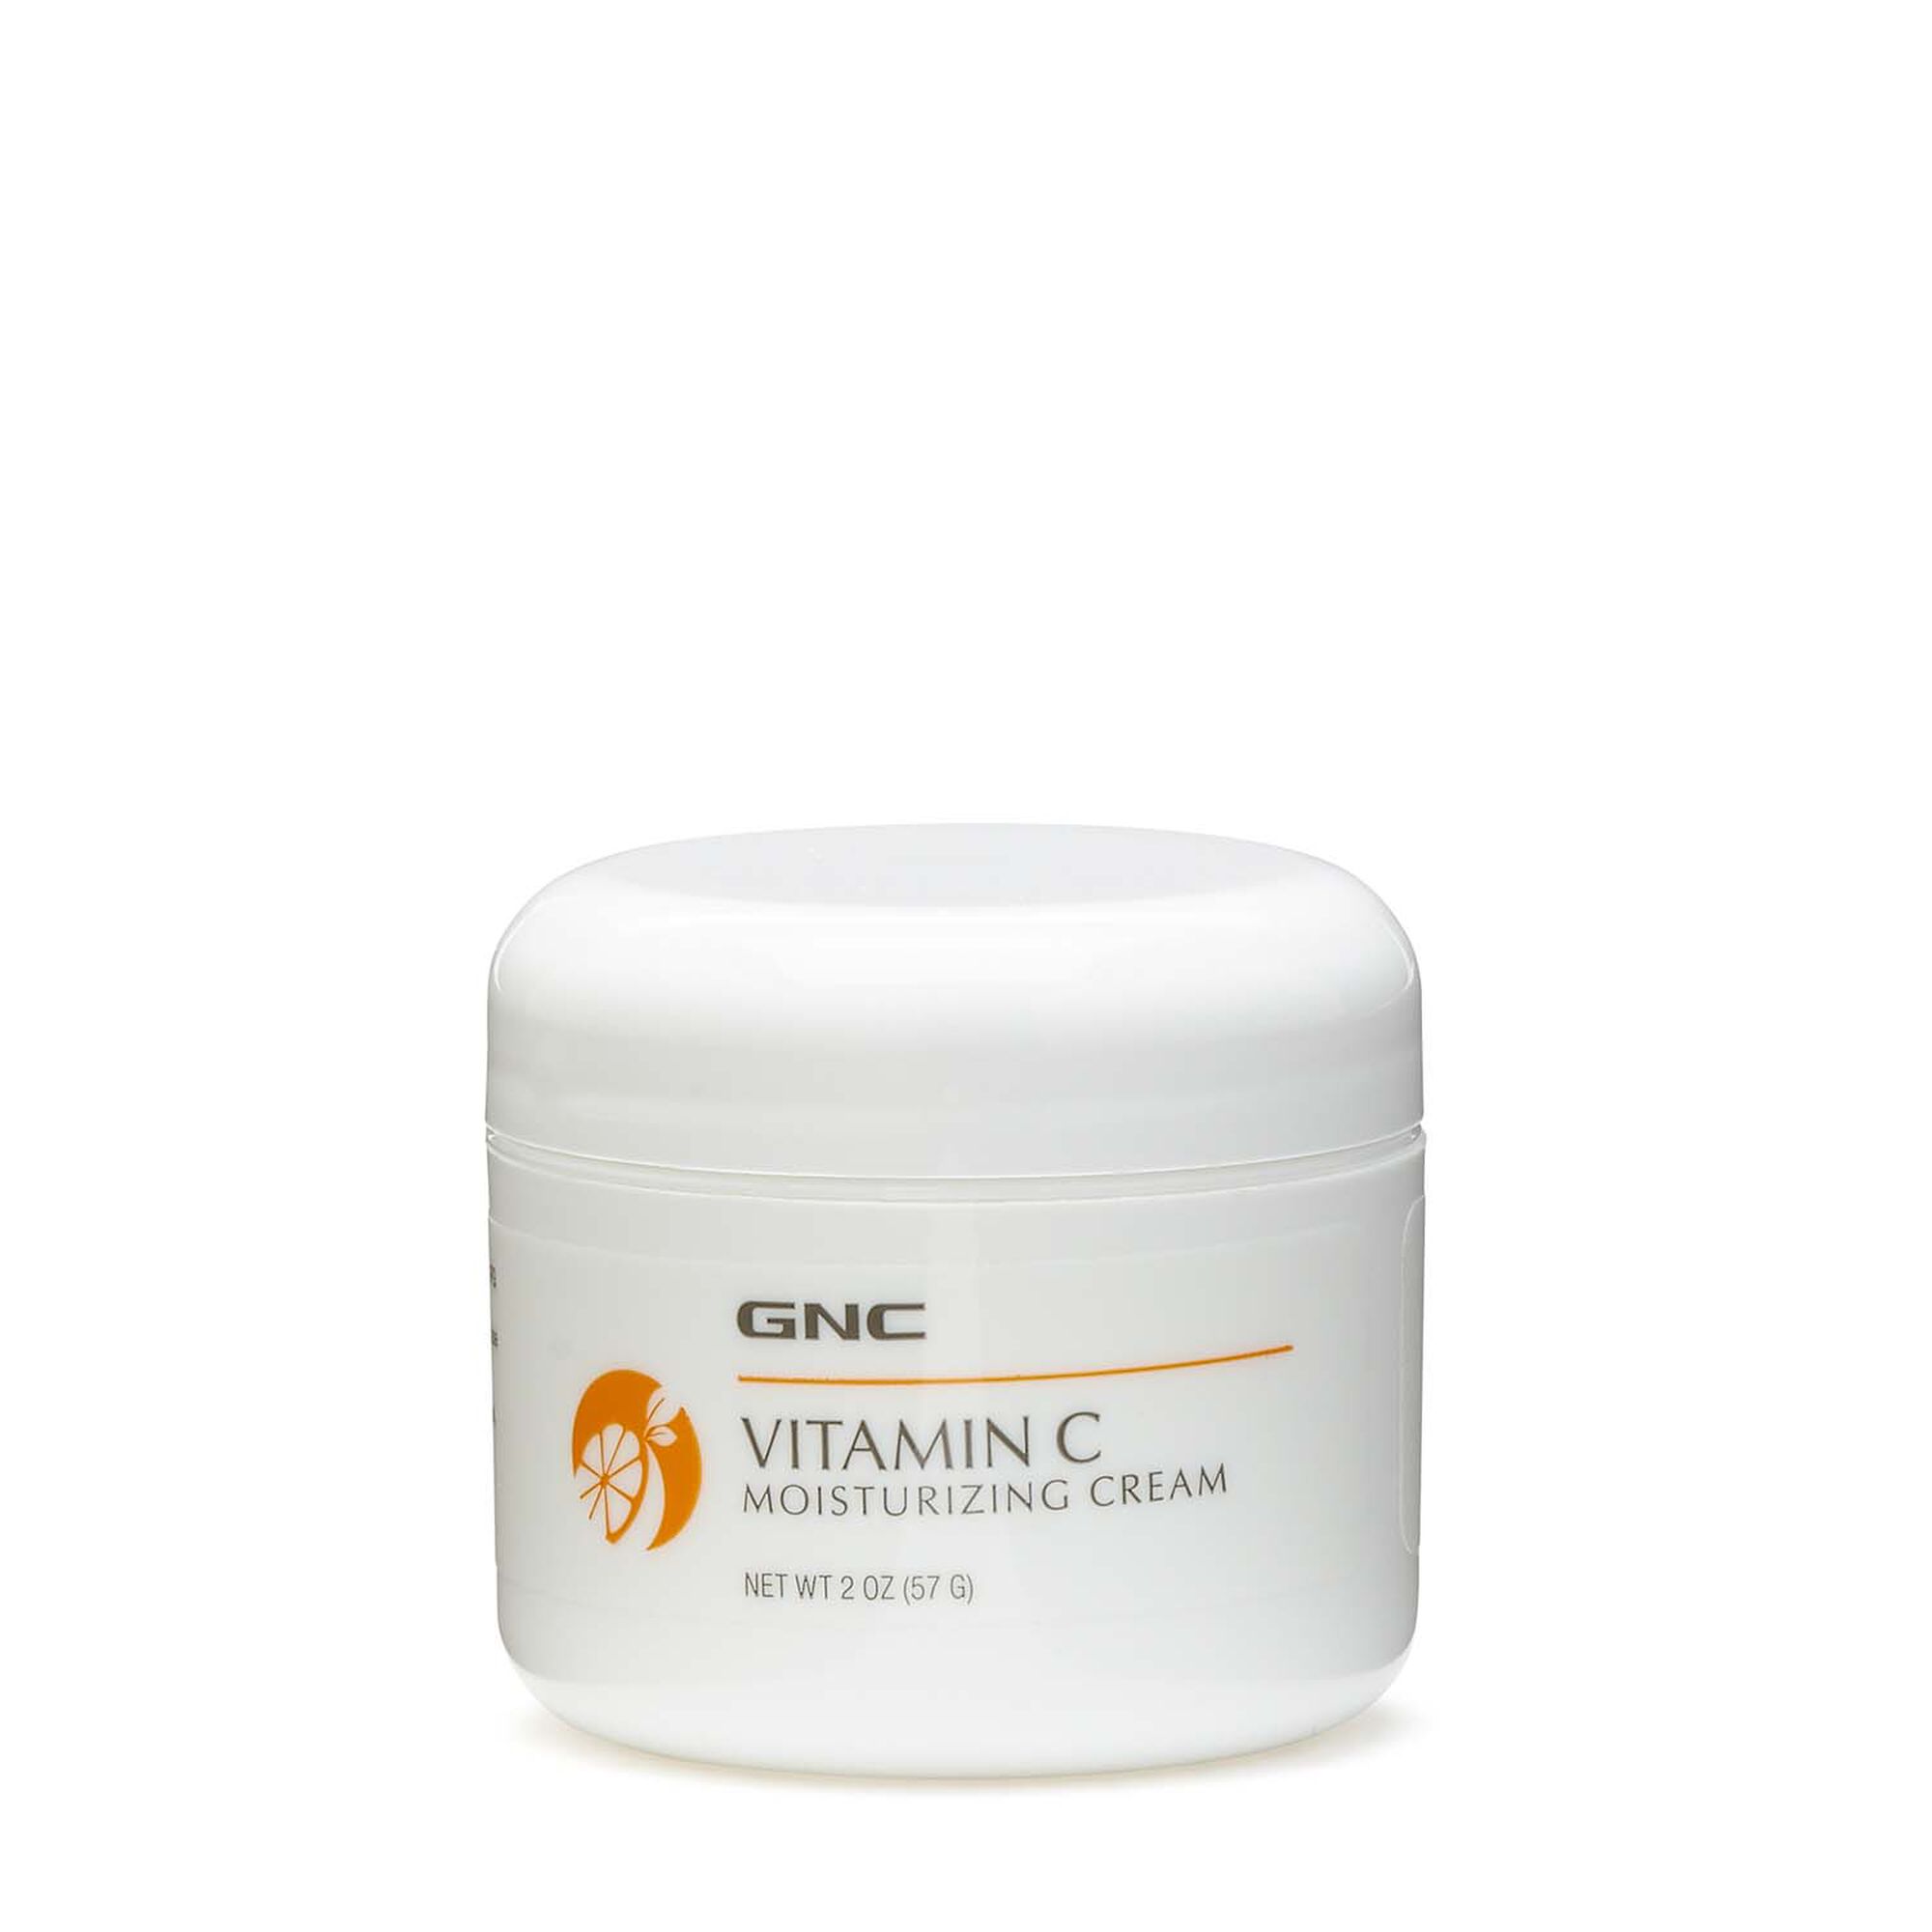 Gnc Vitamin C Moisturizing Cream